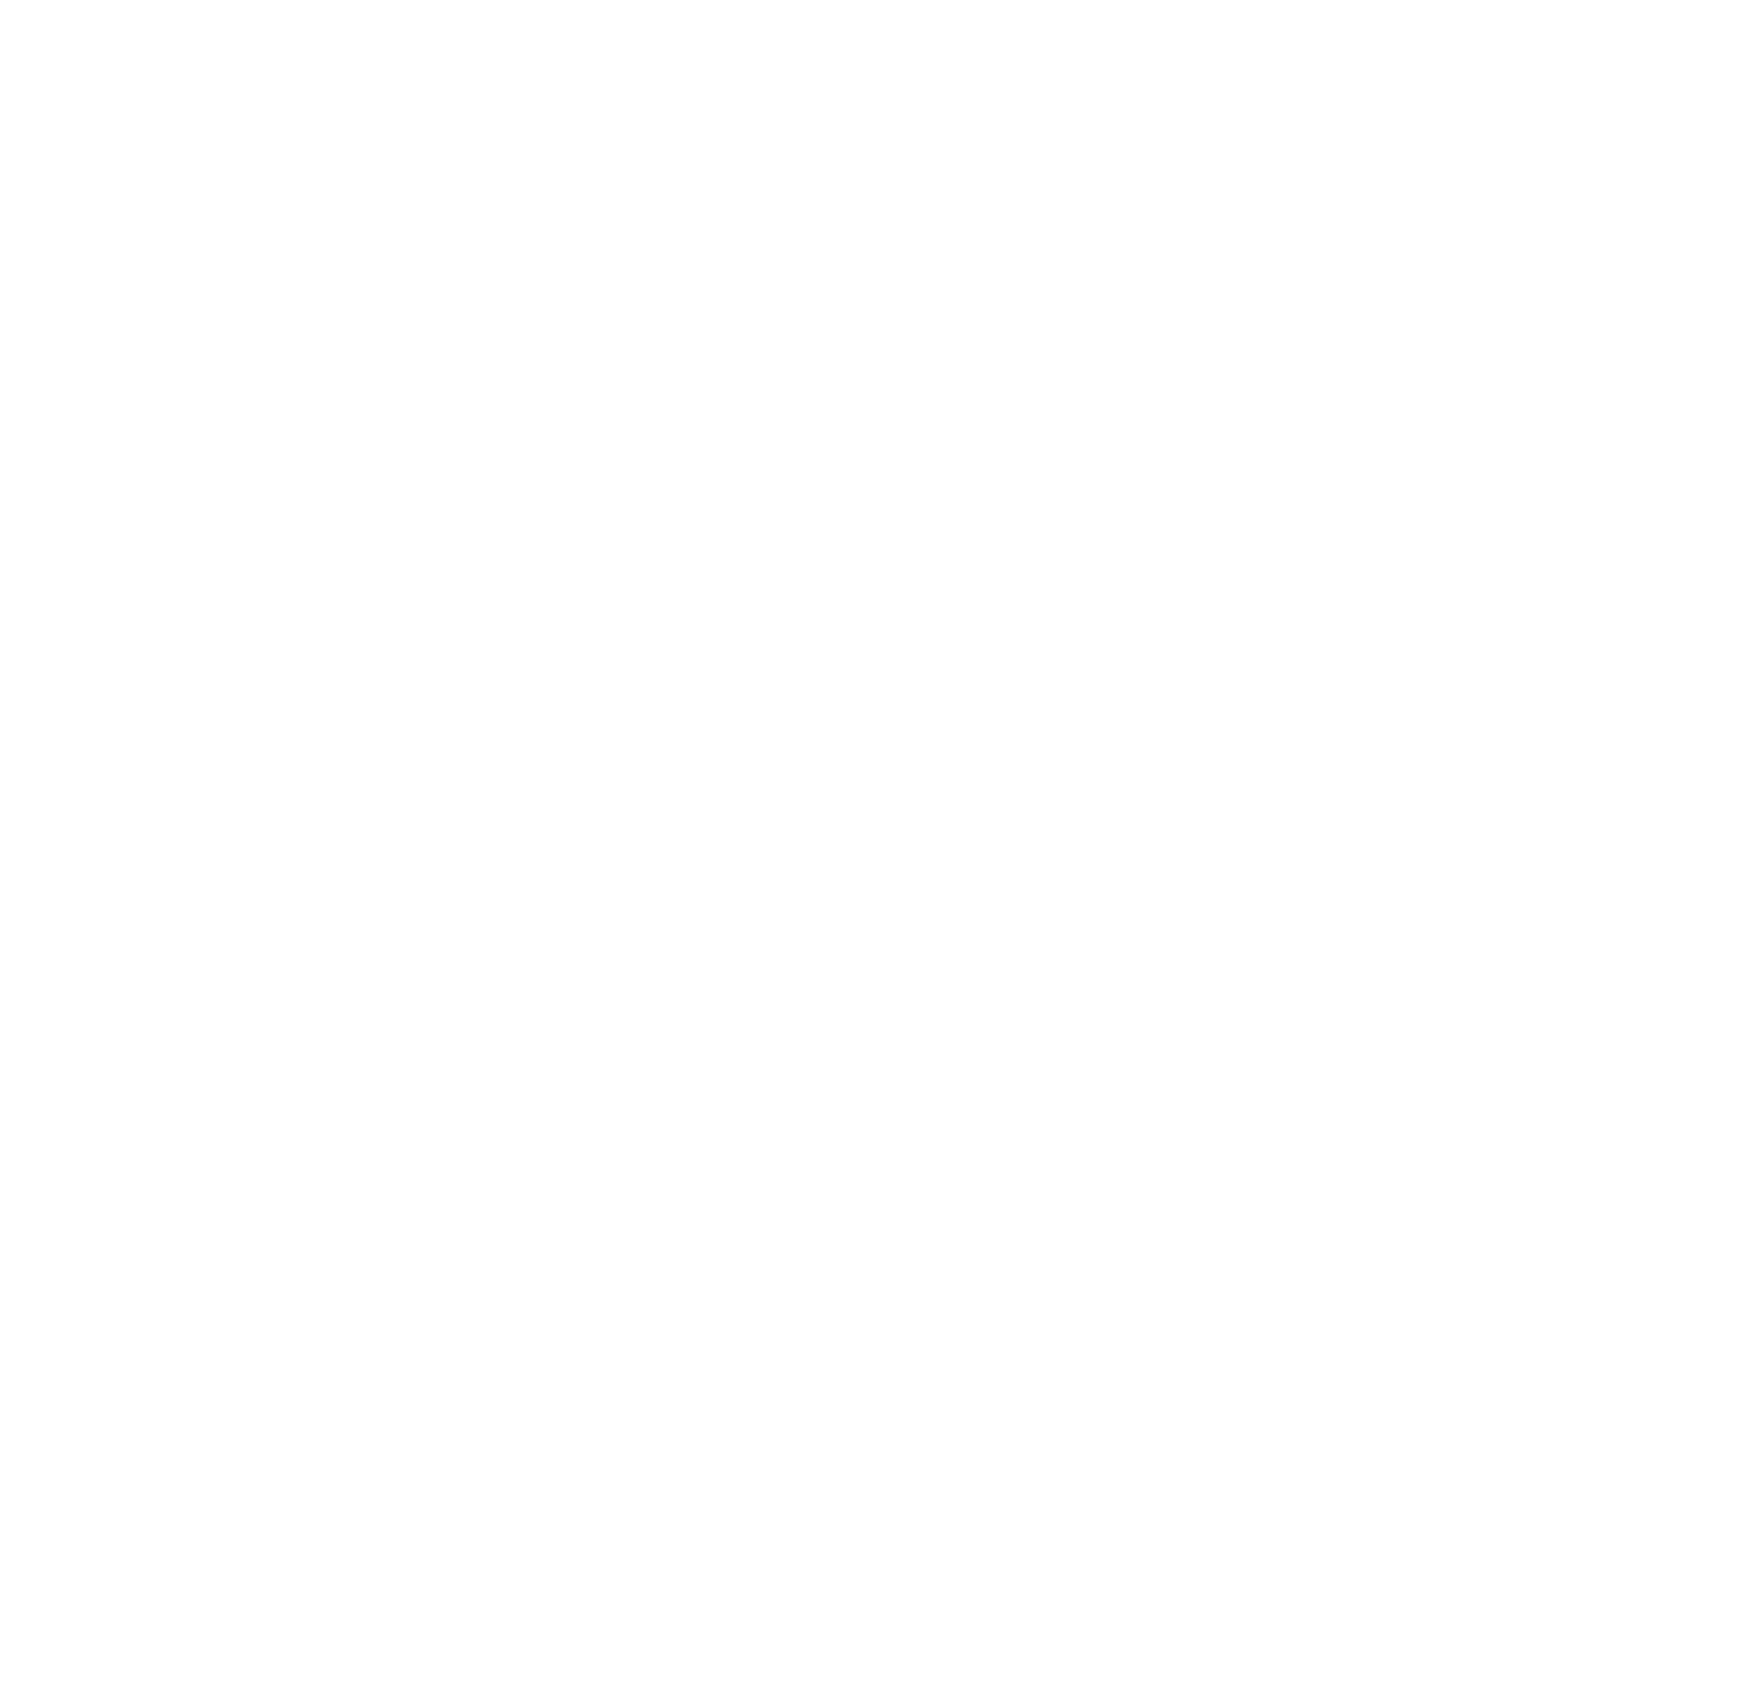 UNAM Logo - Facultad de Medicina UNAM